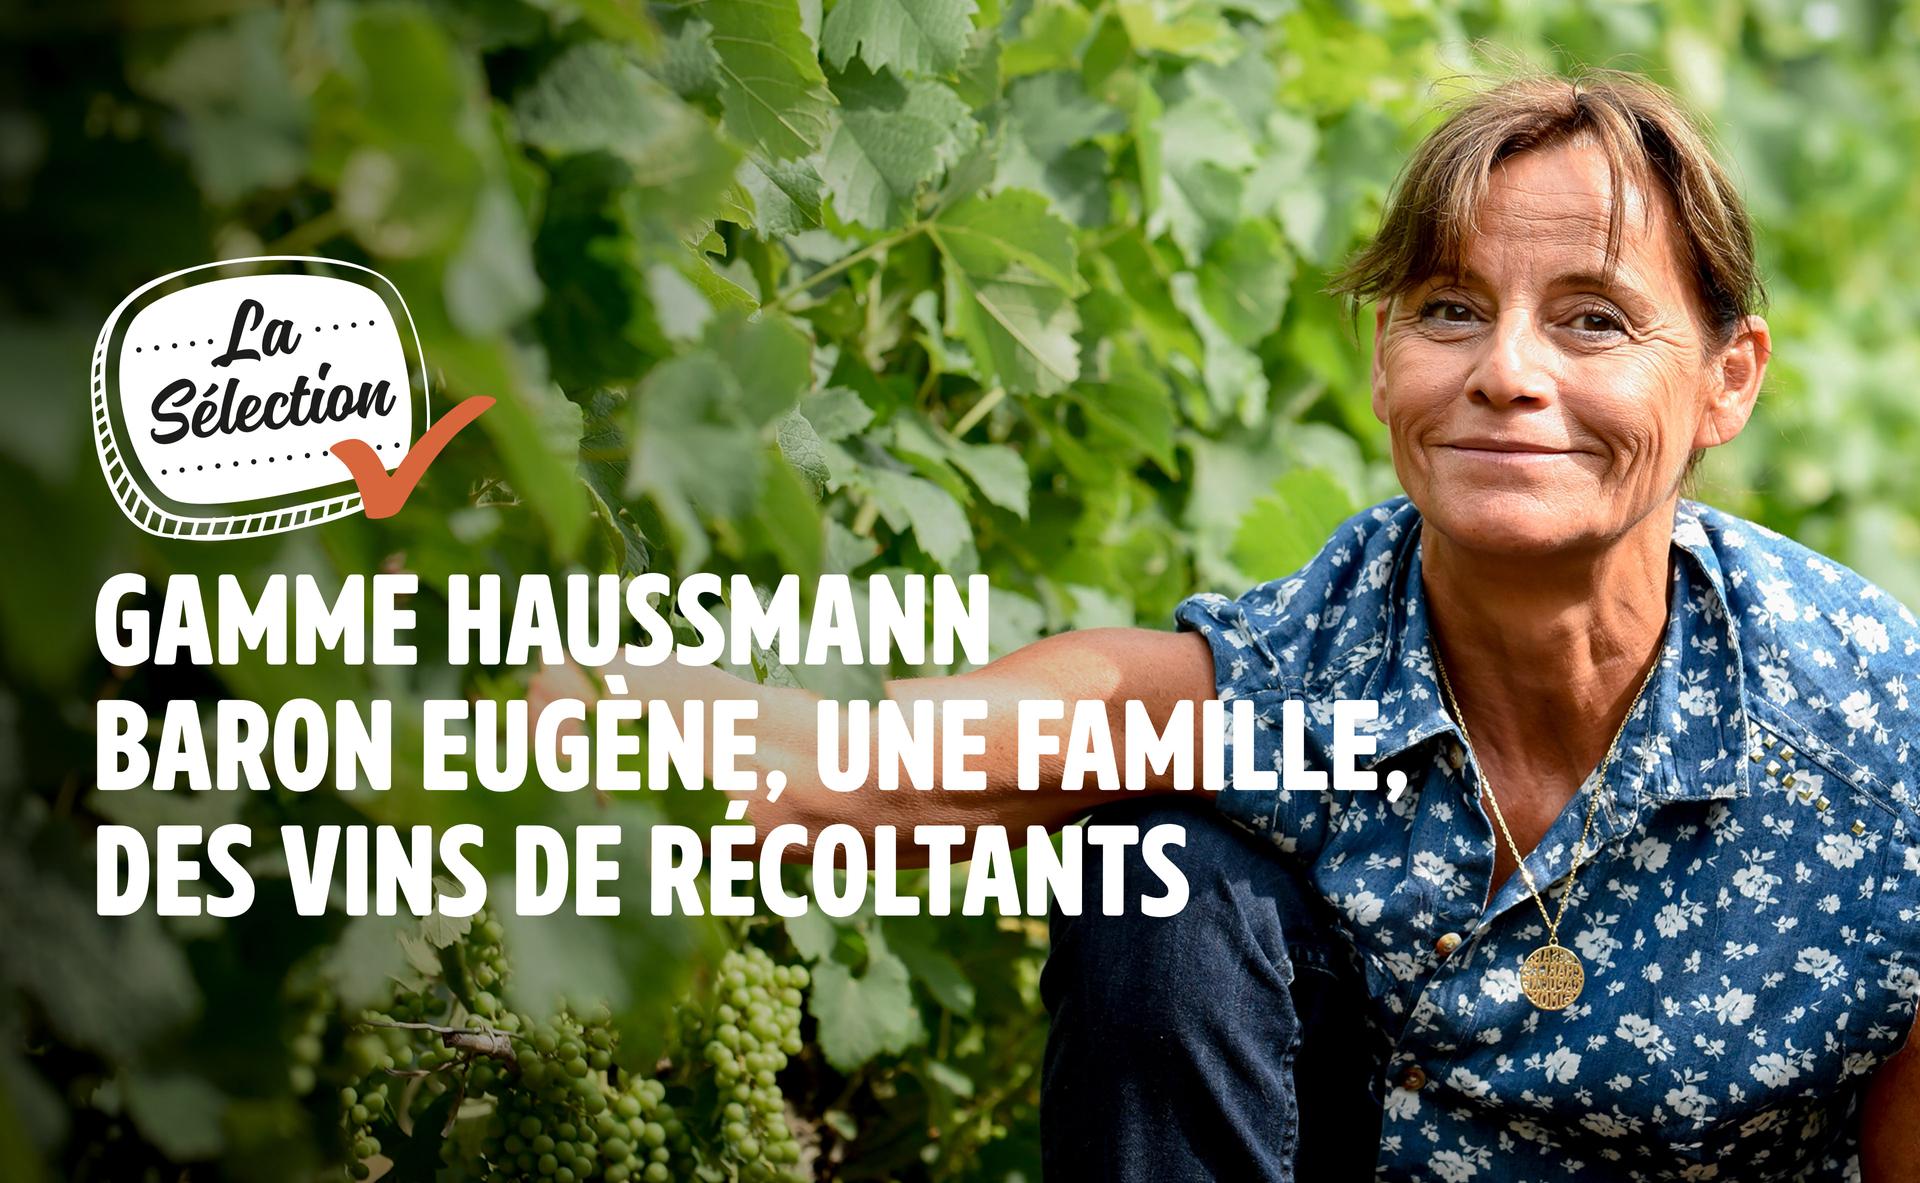 Gamme Haussmann Baron Eugène, une famille, des vins de récoltants